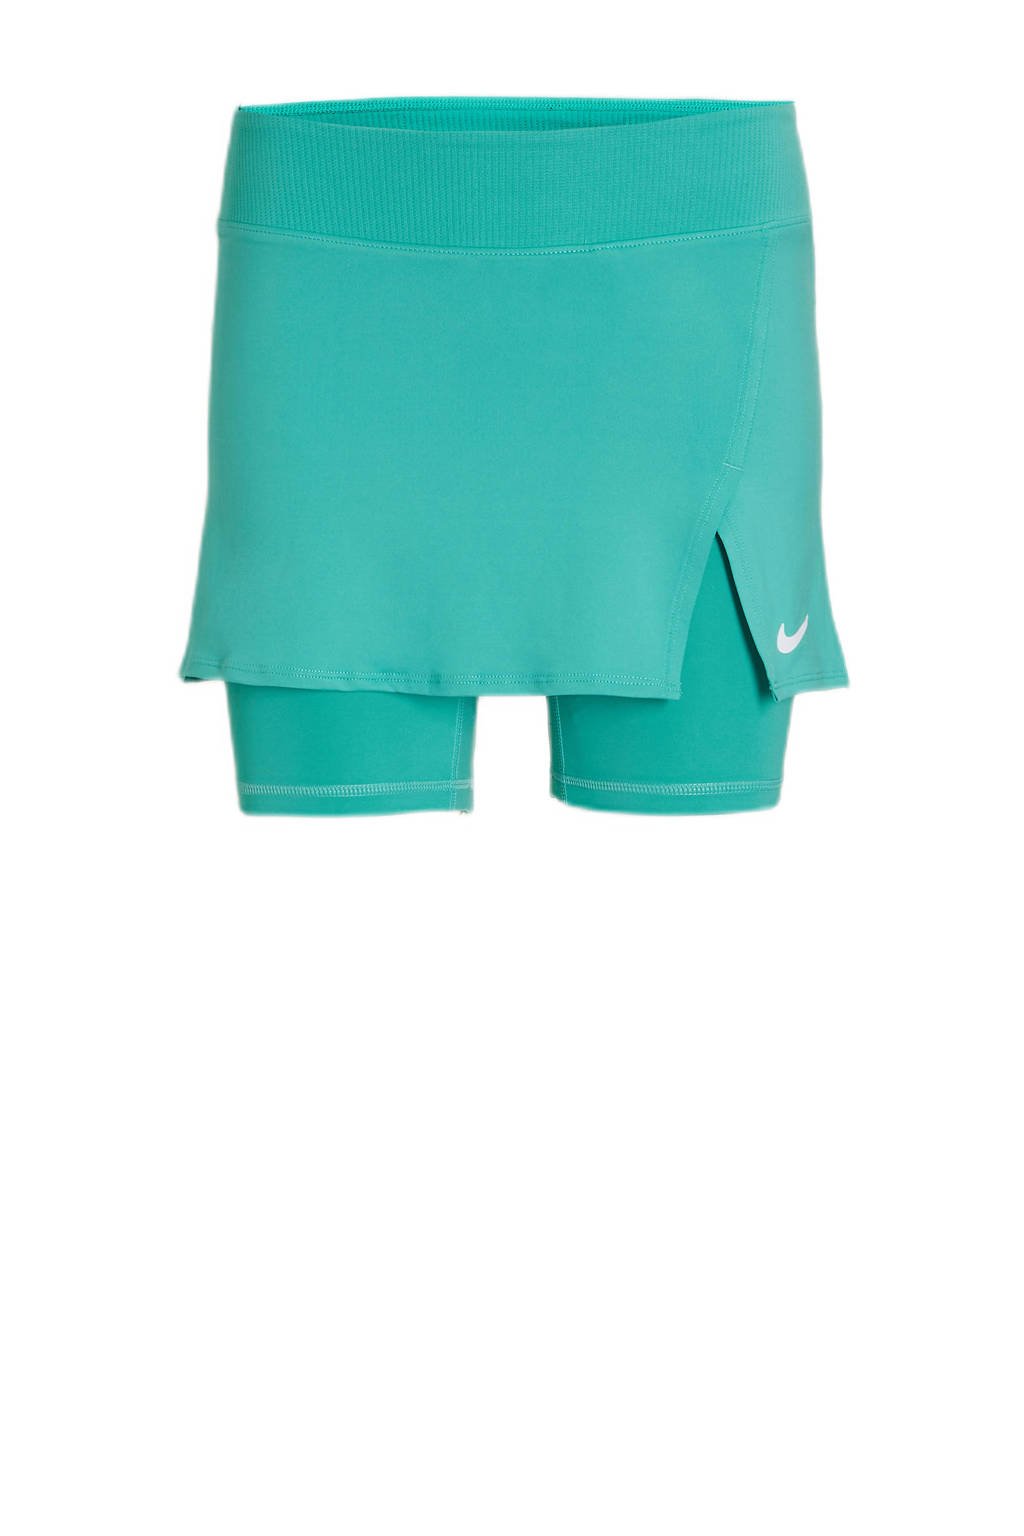 Nike sportrok turquoise